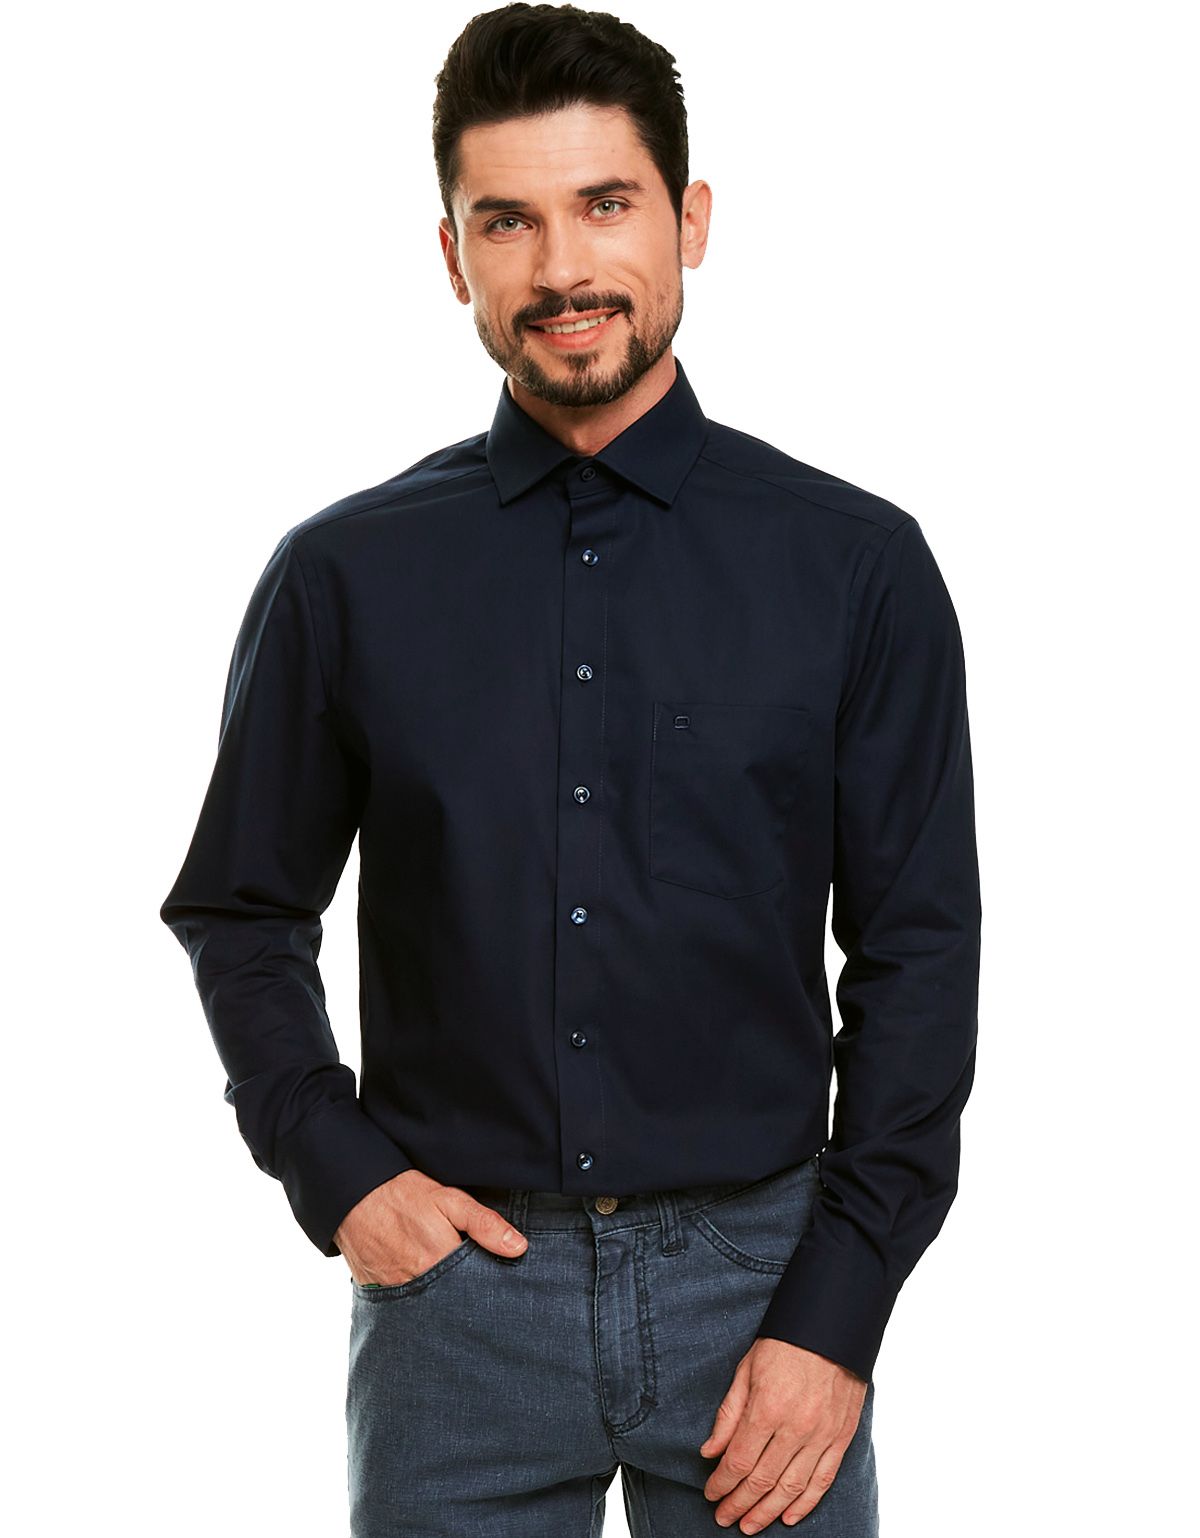 Рубашка мужская классическая OLYMP Luxor, modern fit[Синий]